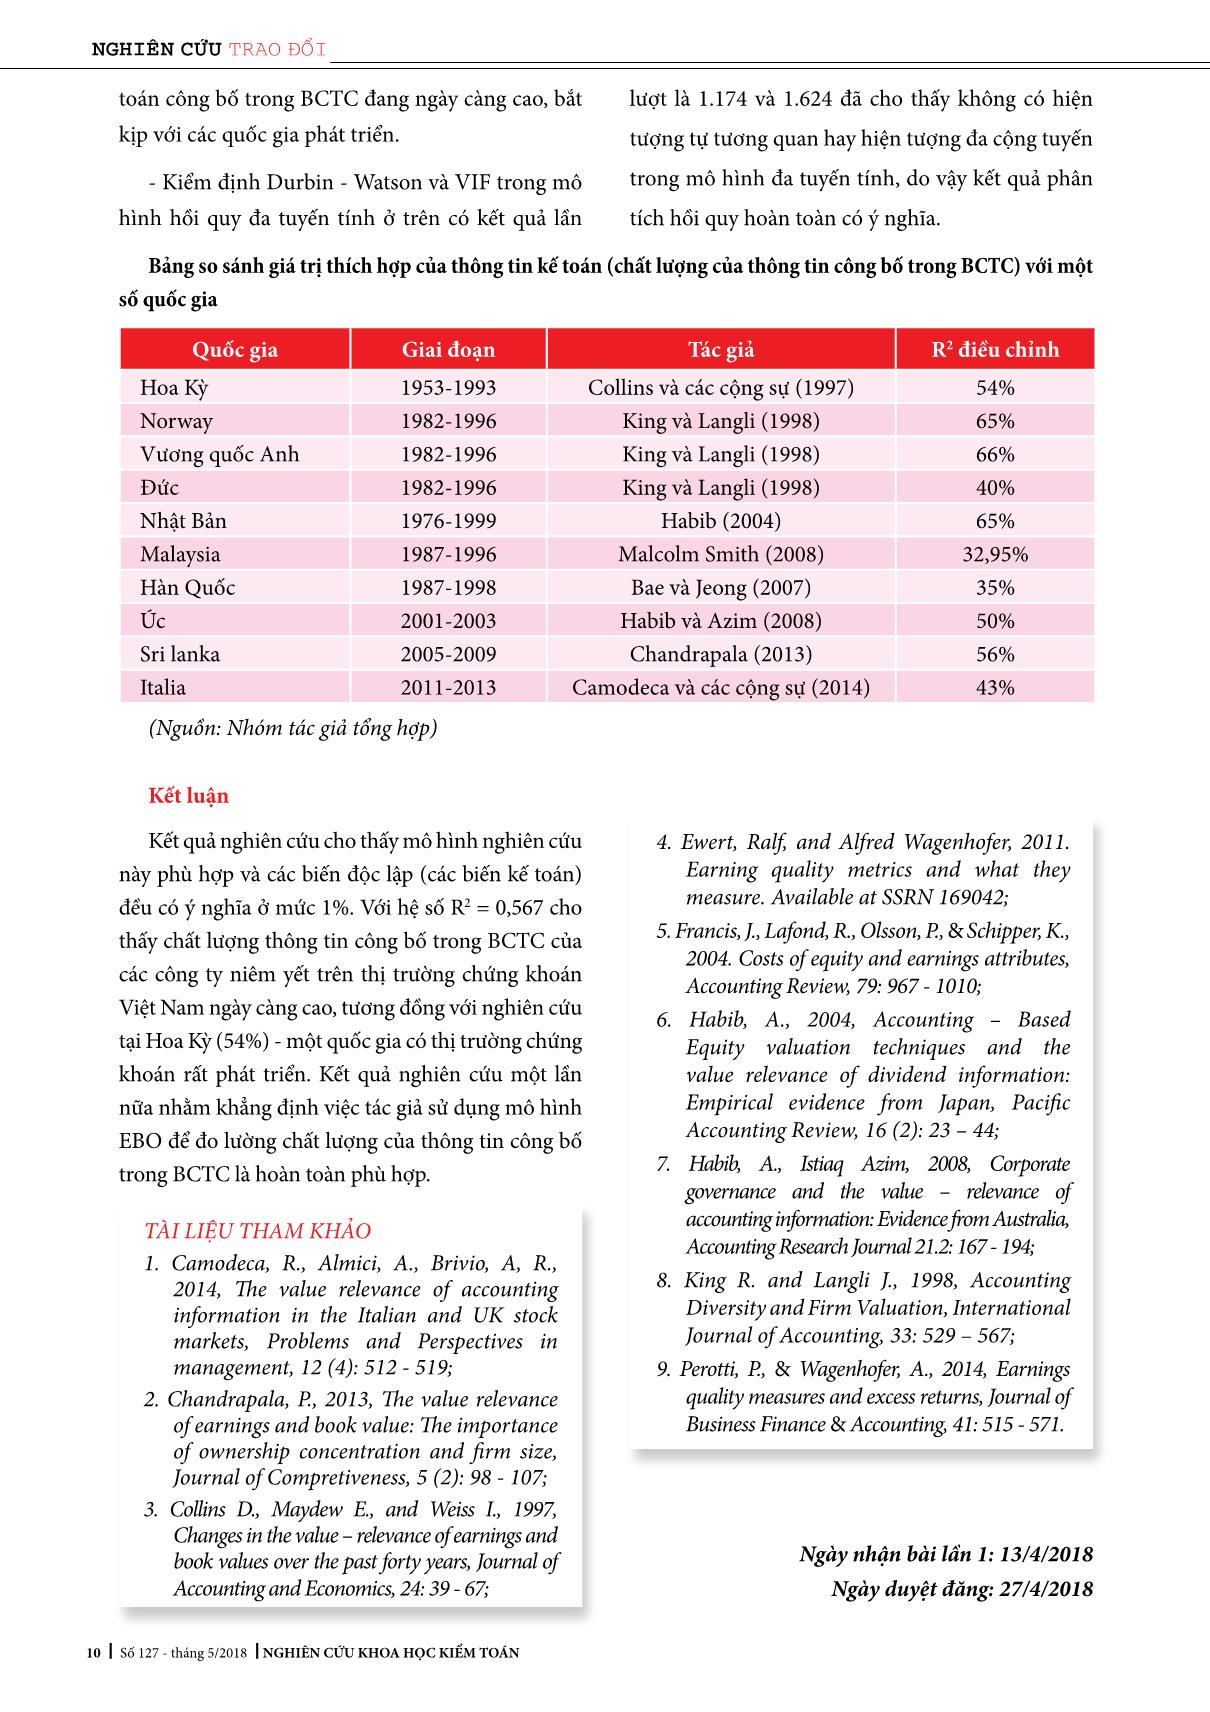 Các nhân tố ảnh hưởng đến tính độc lập của kiểm toán viên - Đề xuất mô hình nghiên cứu cho Việt Nam trang 1